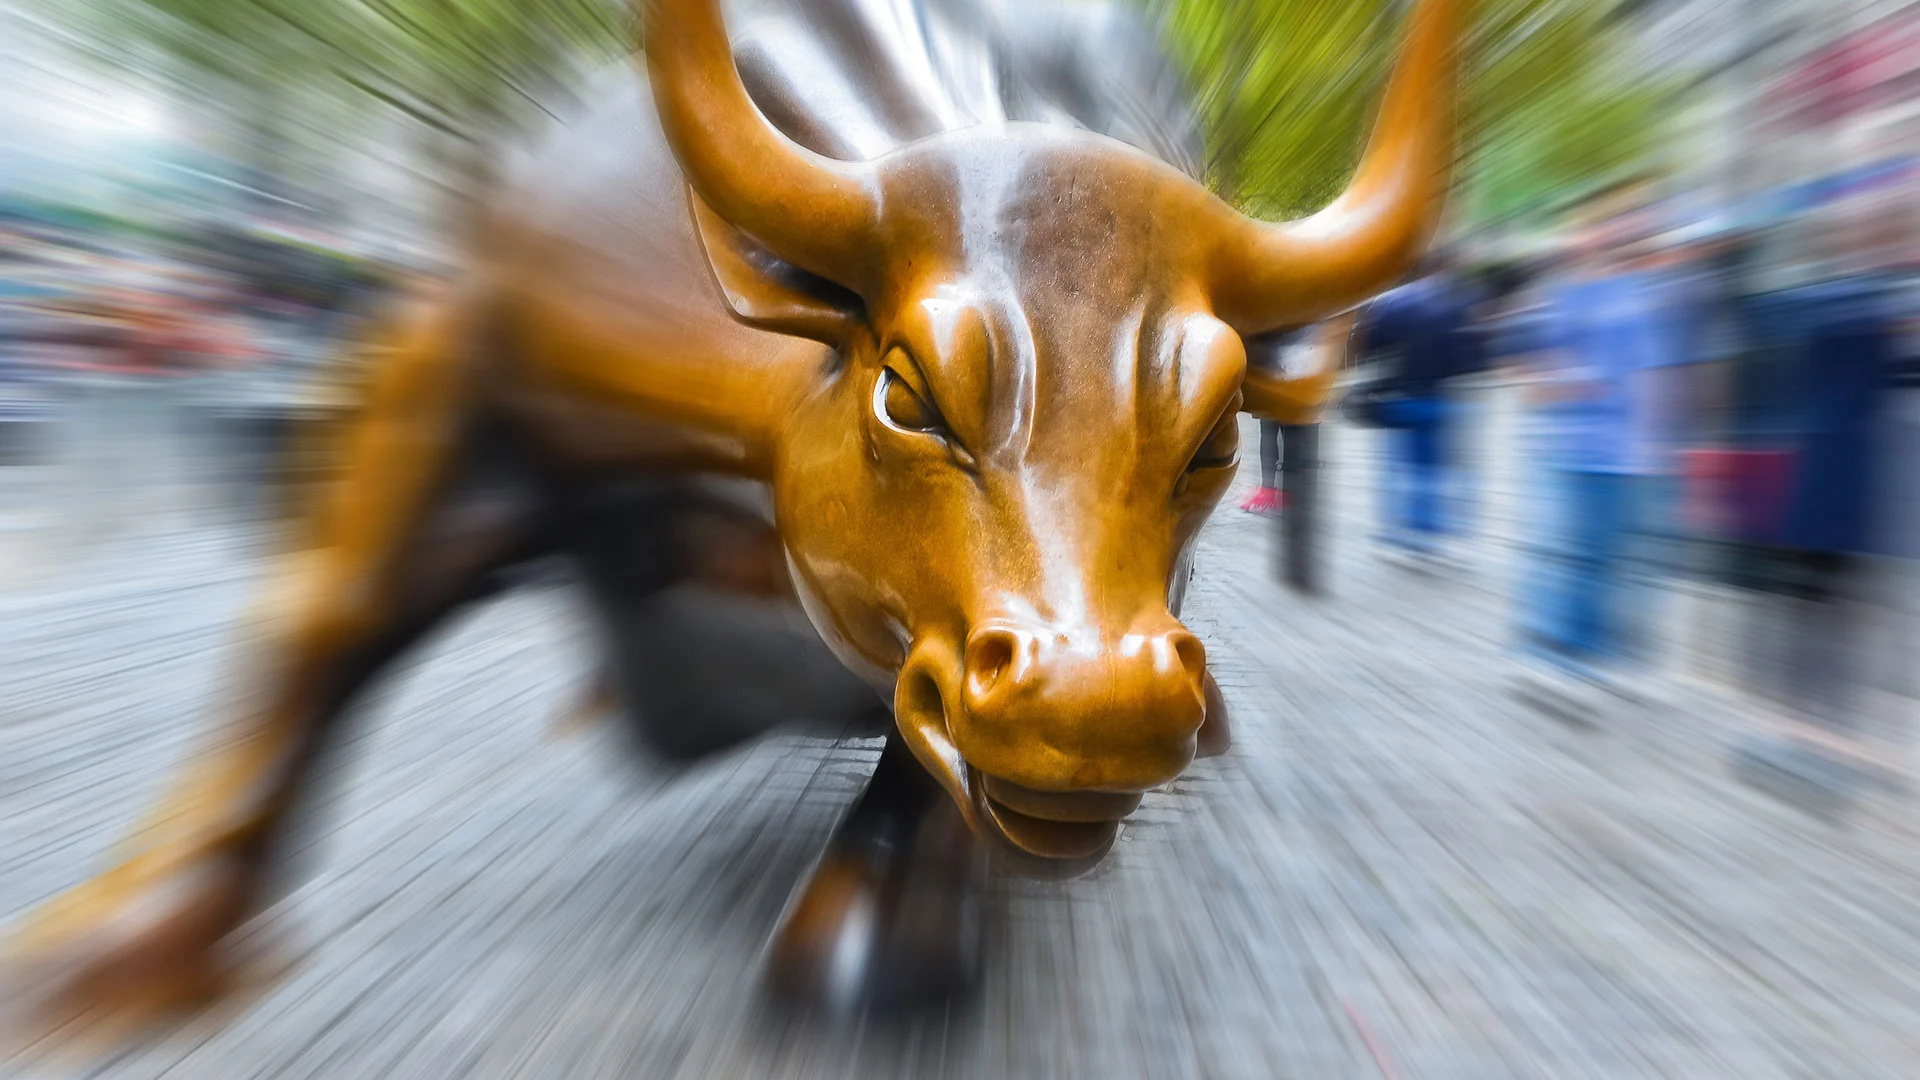 Jahresendrallye bestätigt? Darum rasen jetzt DAX, Nasdaq, Dow Jones, S&P 500 an den Börsen am Freitag schon wieder nach oben (Foto: Shutterstock)